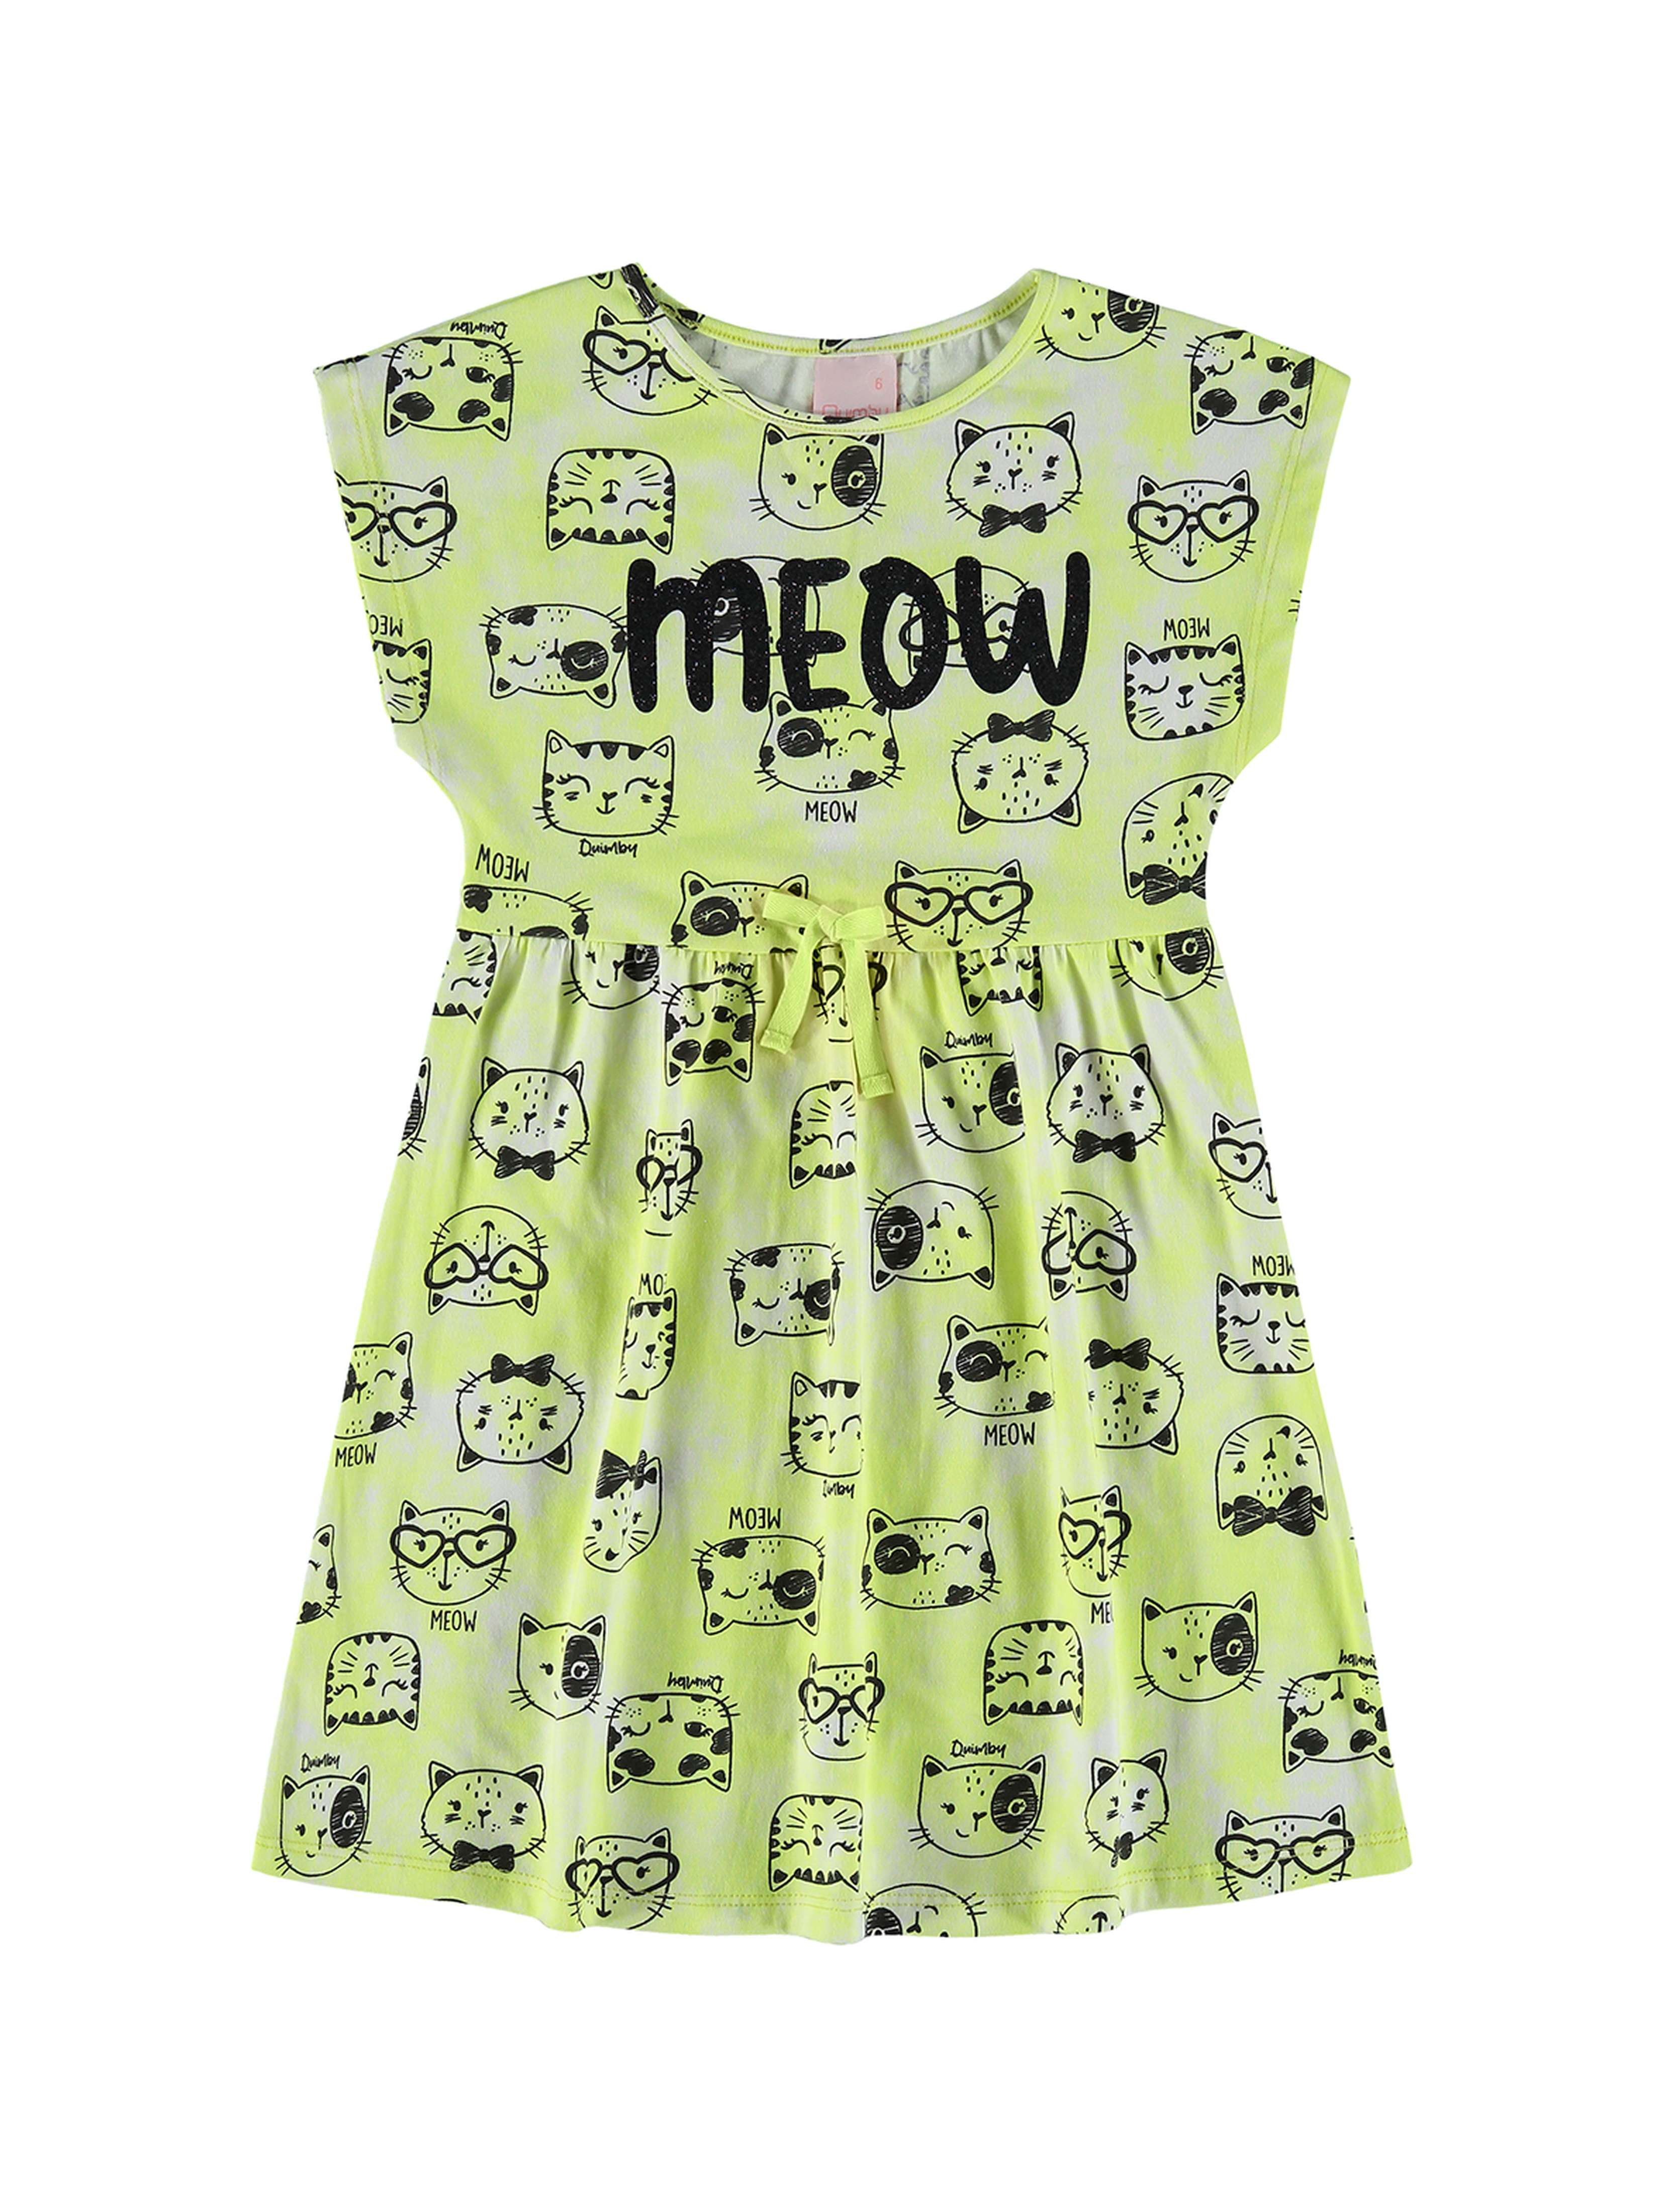 Limonkowa sukienka dziewczęca z krótkim rękawem w koty